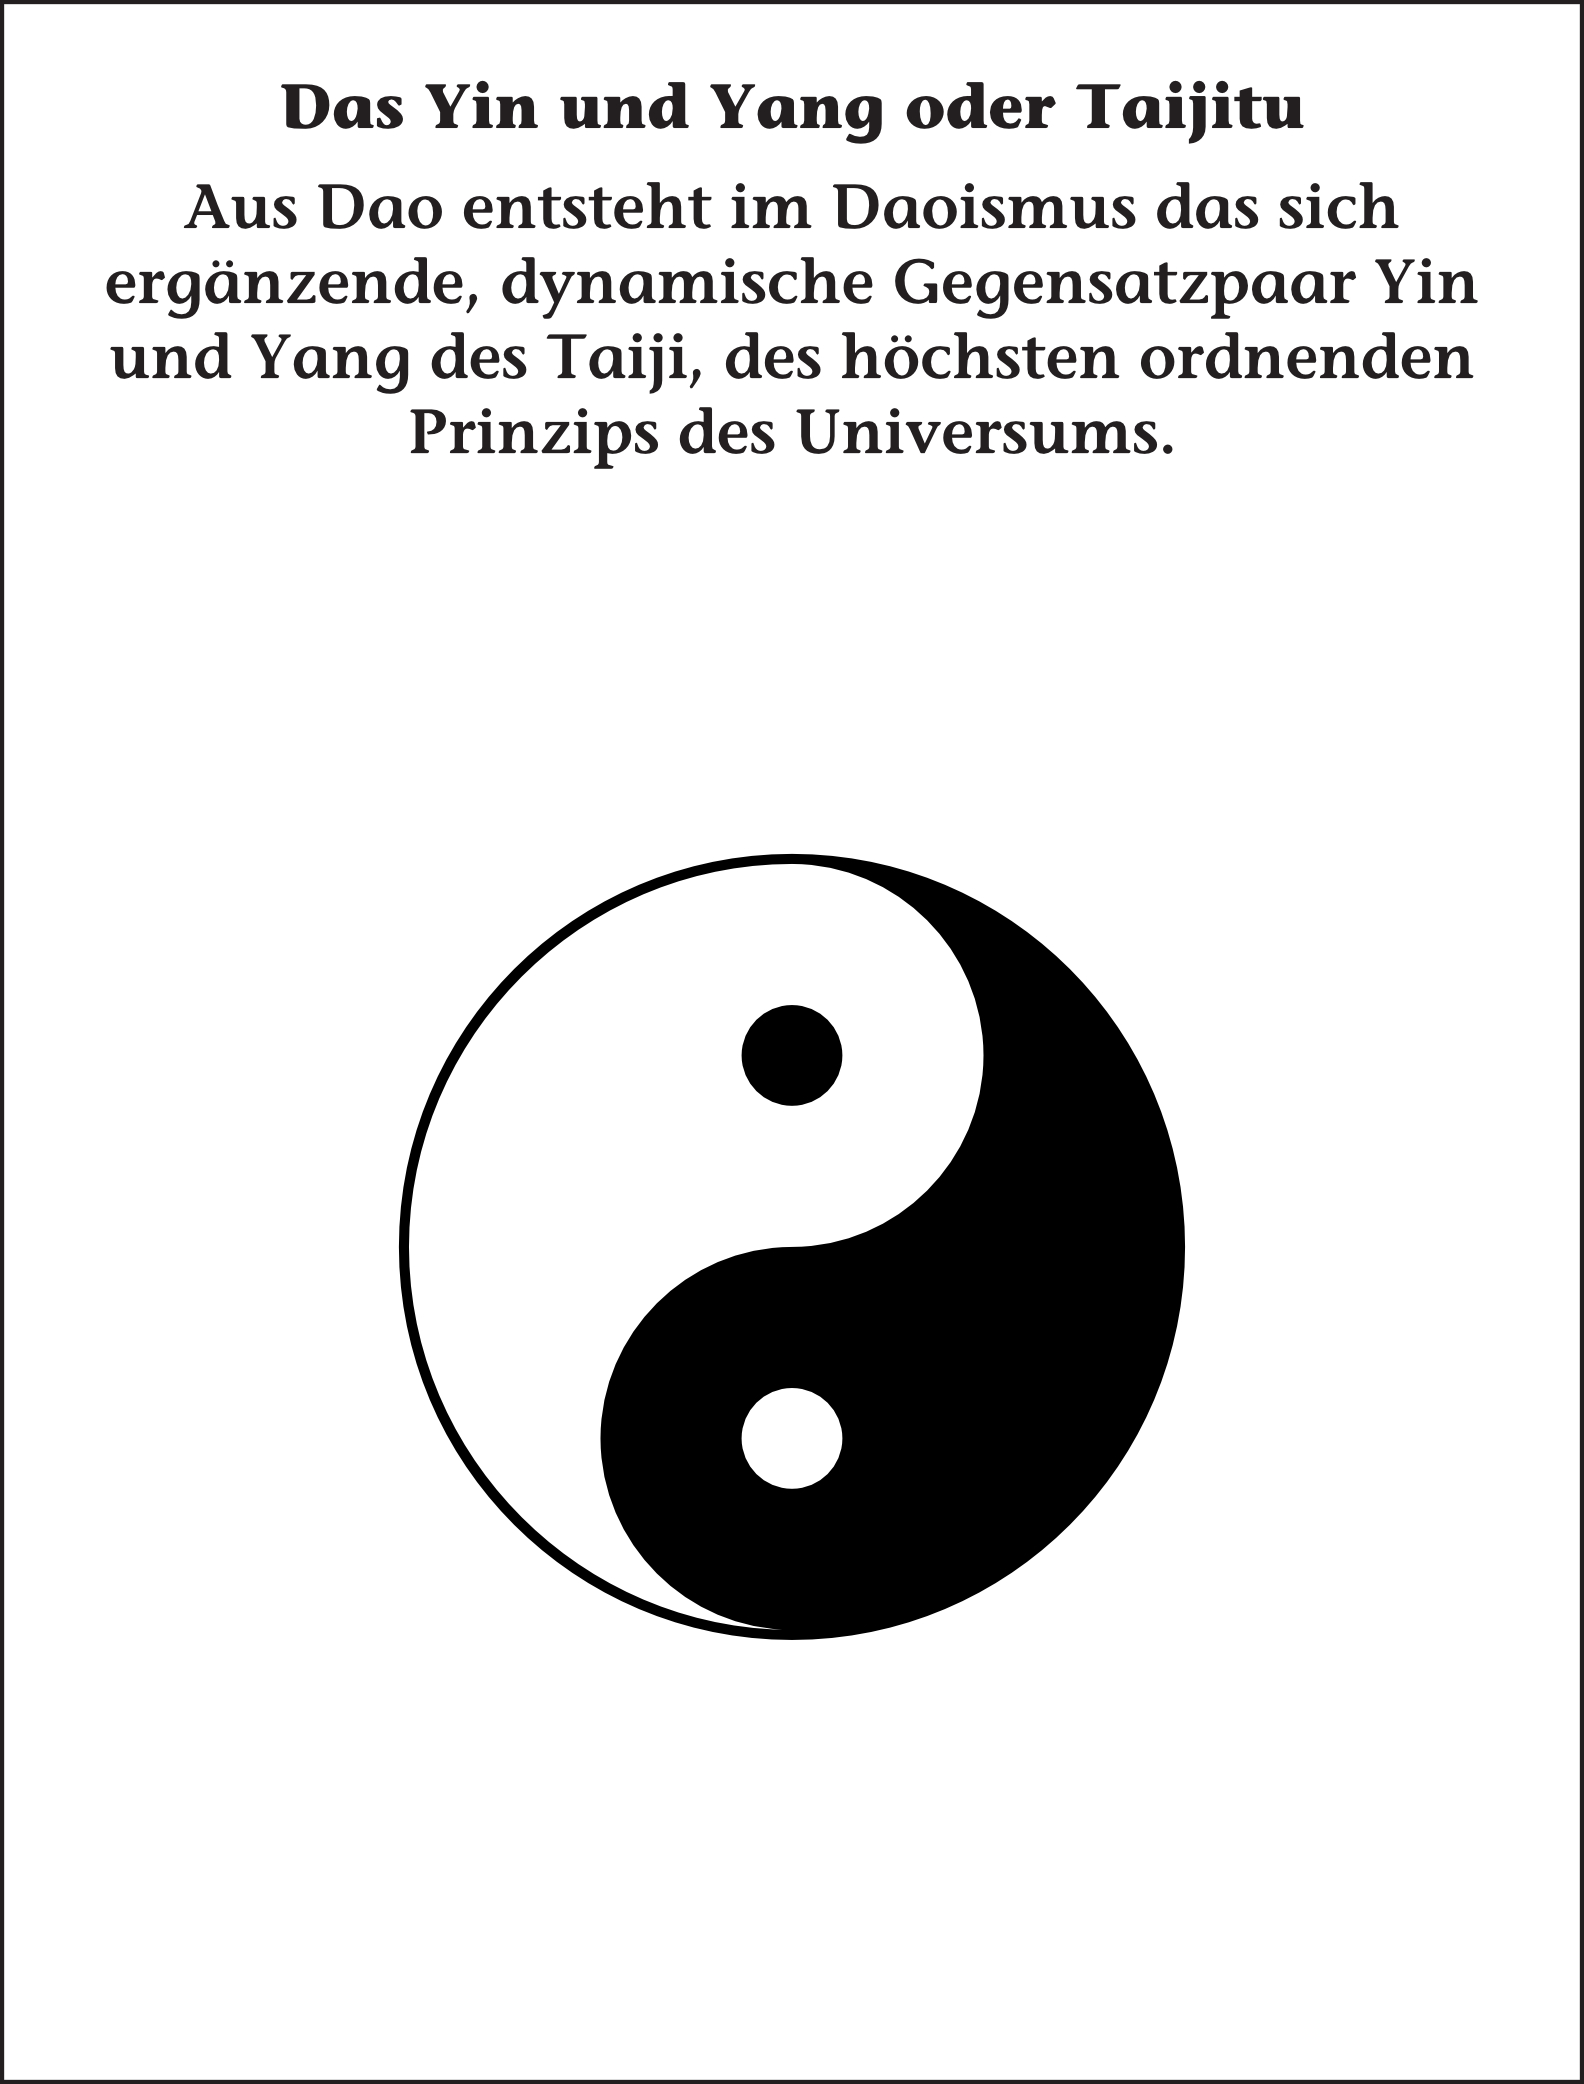 Das Yin und Yang oder Taijitu